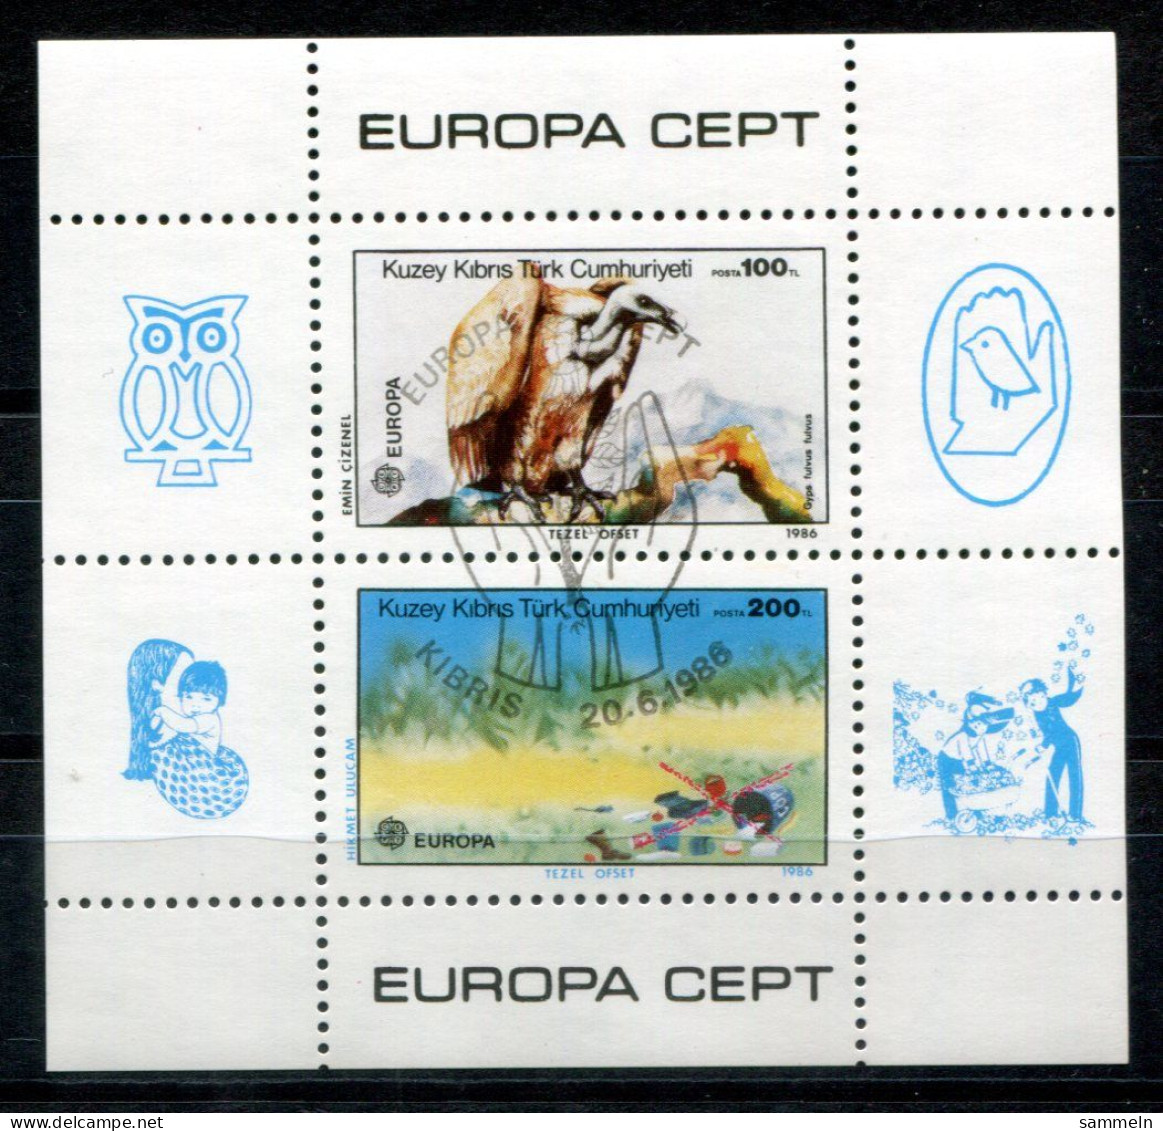 TÜRKISCH-ZYPERN Block 5, Bl.5 Canc. - Europa CEPT 1986, Vogel, Bird, Oiseau - TURKISH CYPRUS / CHYPRE TURQUE - Oblitérés